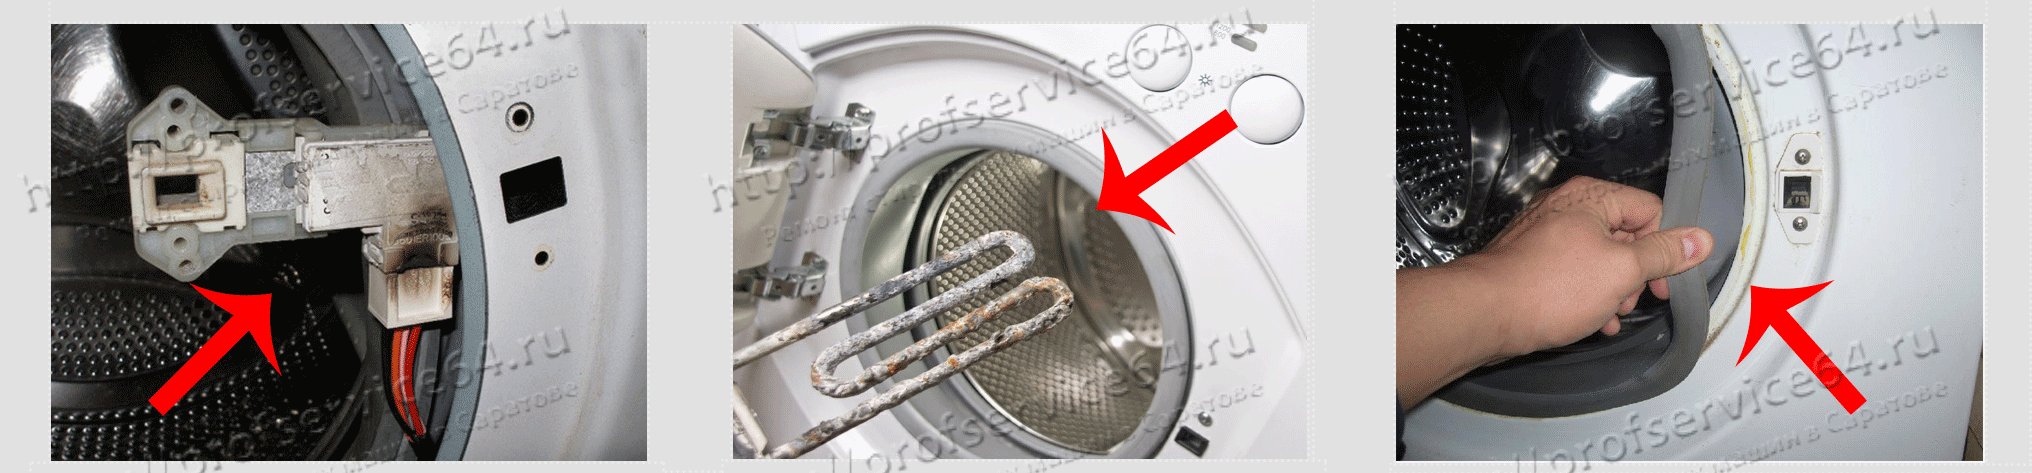 Почему не открывается дверца стиральной машины после стирки: причины, что делать? как аварийно открыть стиральную машинку, если она заблокирована: инструкция, советы